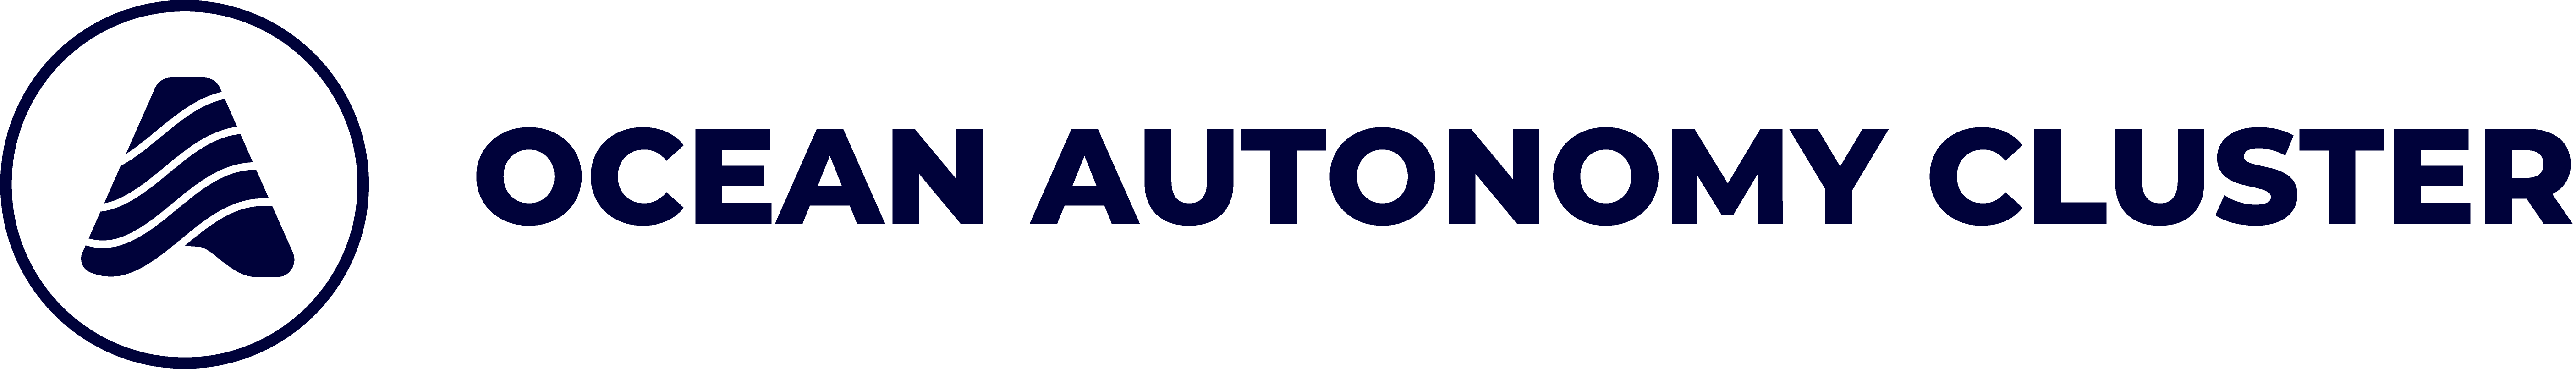 Ocean Autonomy Cluster_Logo